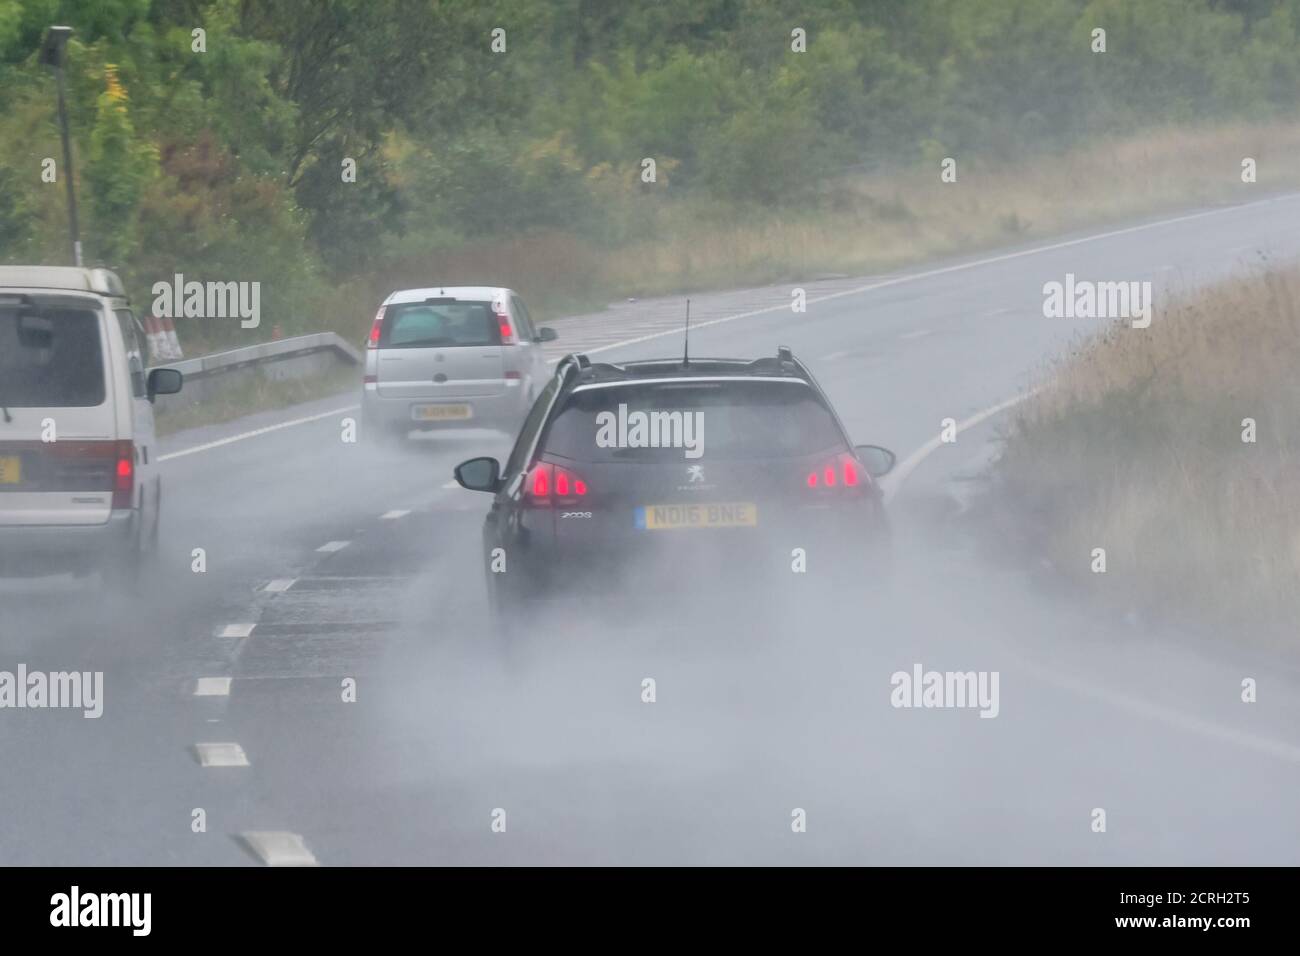 Conductores conduciendo coches en una carretera de dos carriles durante fuertes lluvias con poca visibilidad en Inglaterra, Reino Unido. Mal tiempo y carretera húmeda y peligrosa mientras llueve. Foto de stock